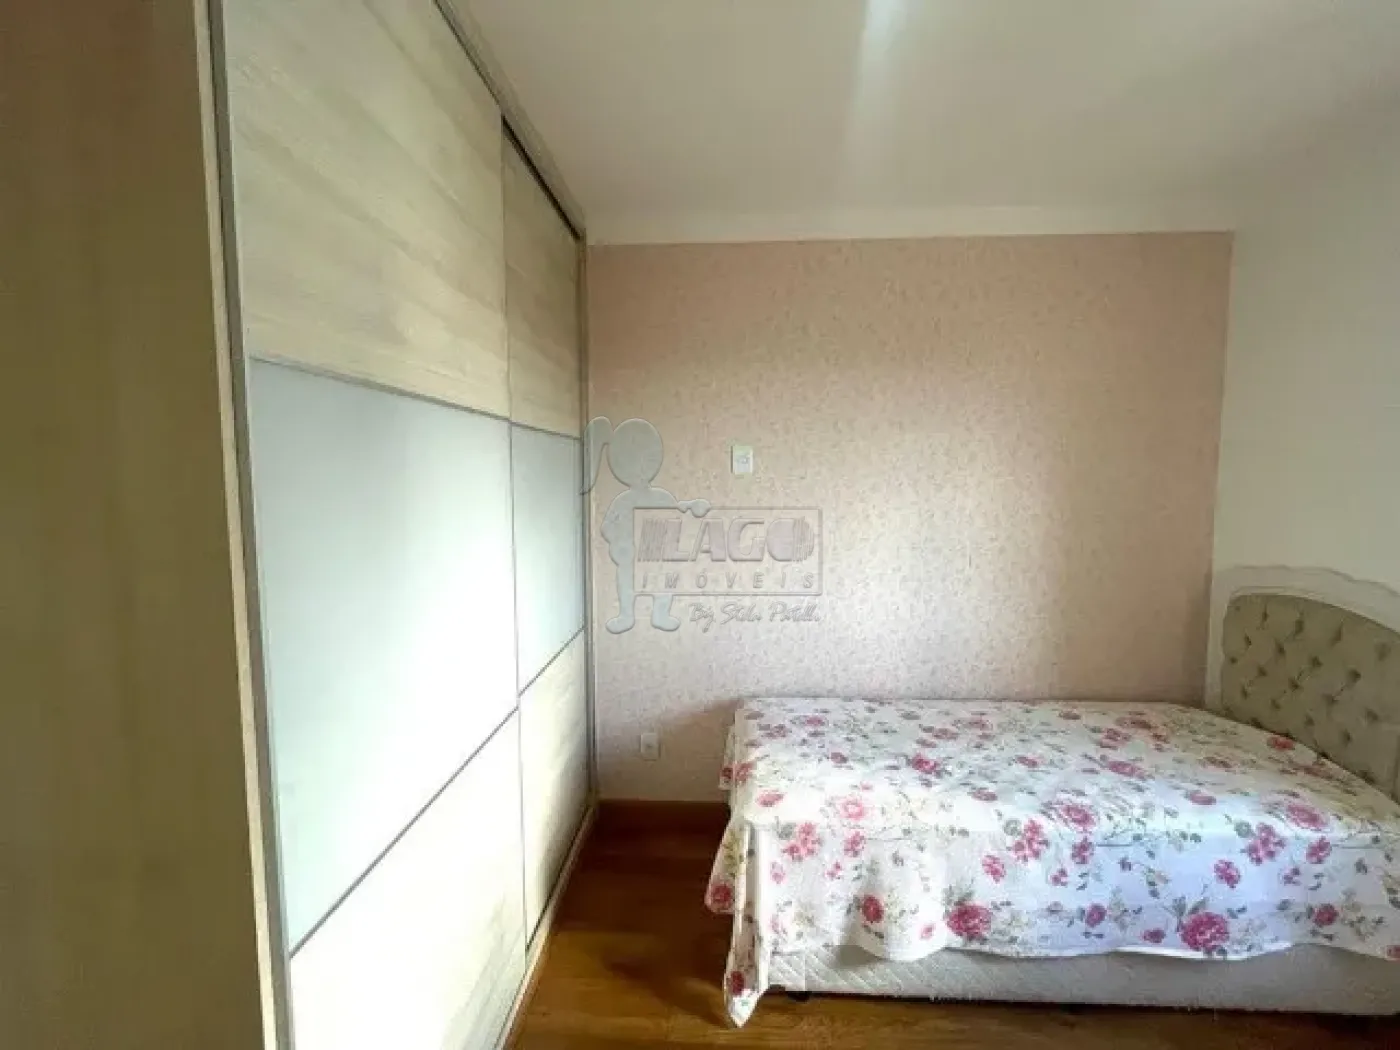 Alugar Apartamento / Padrão em Ribeirão Preto R$ 2.900,00 - Foto 9